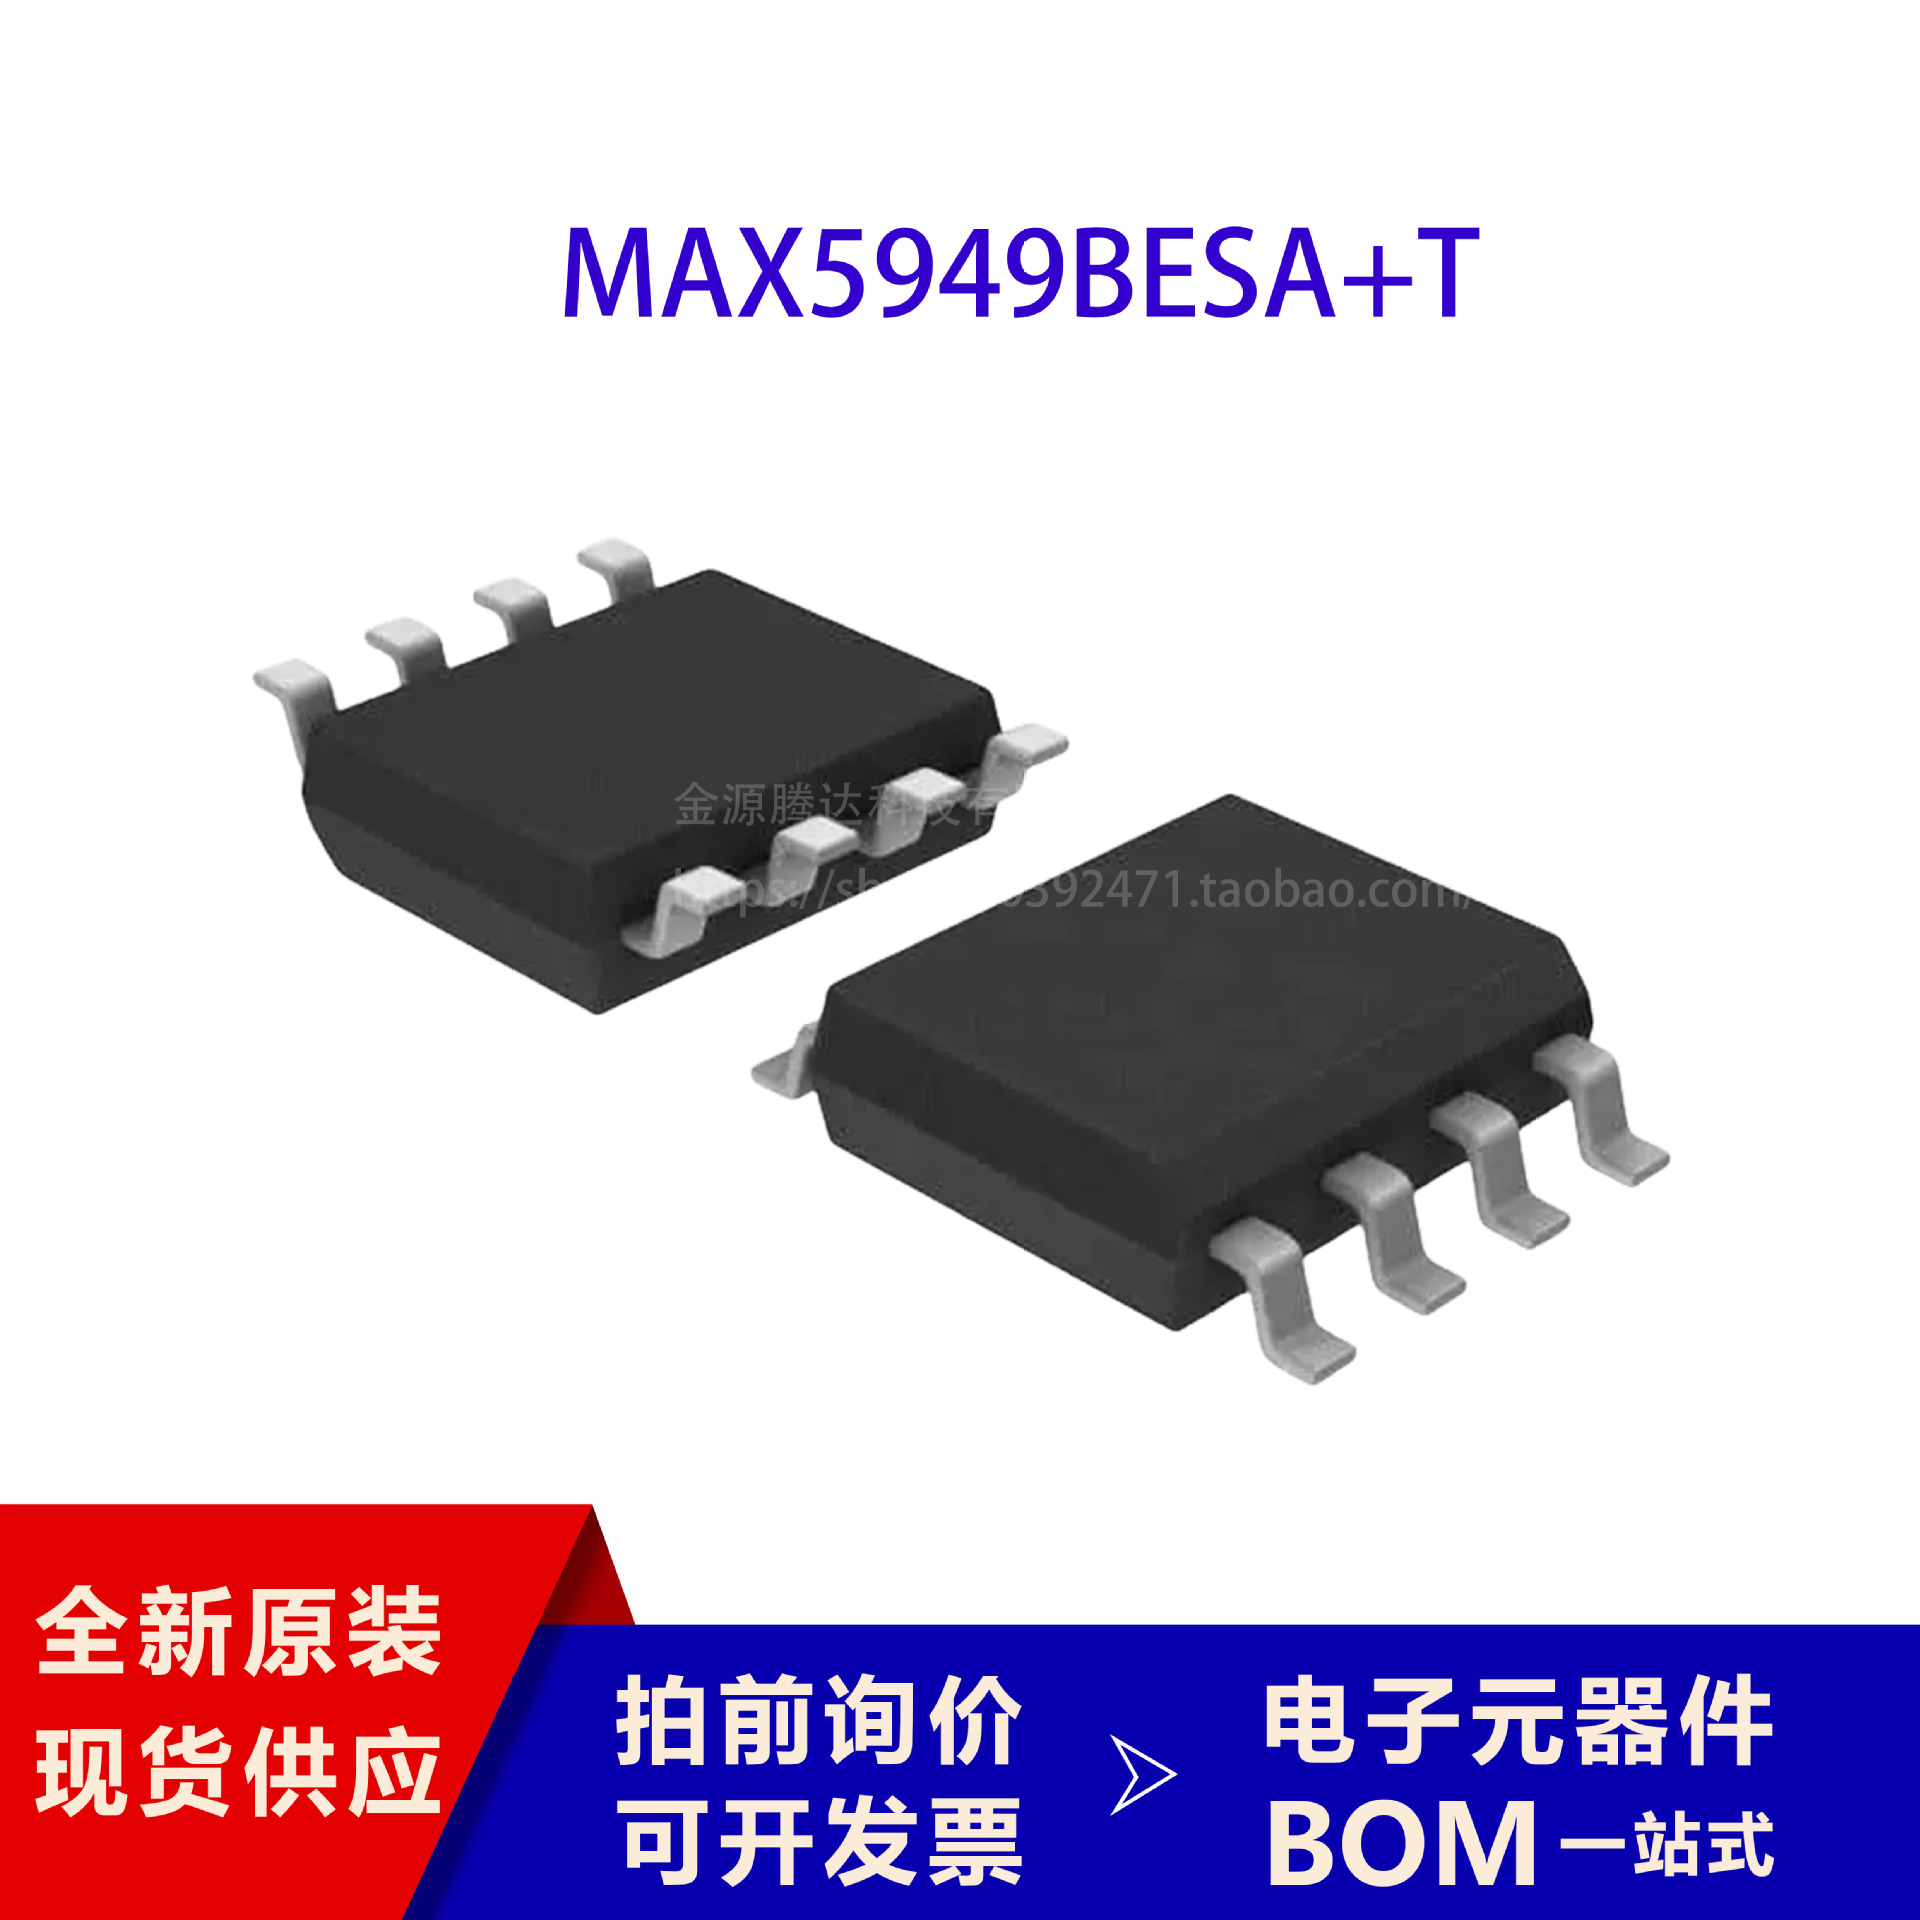 MAX5949BESA+T 全新原装正品 品质保证 电子元器件 集成电路芯片